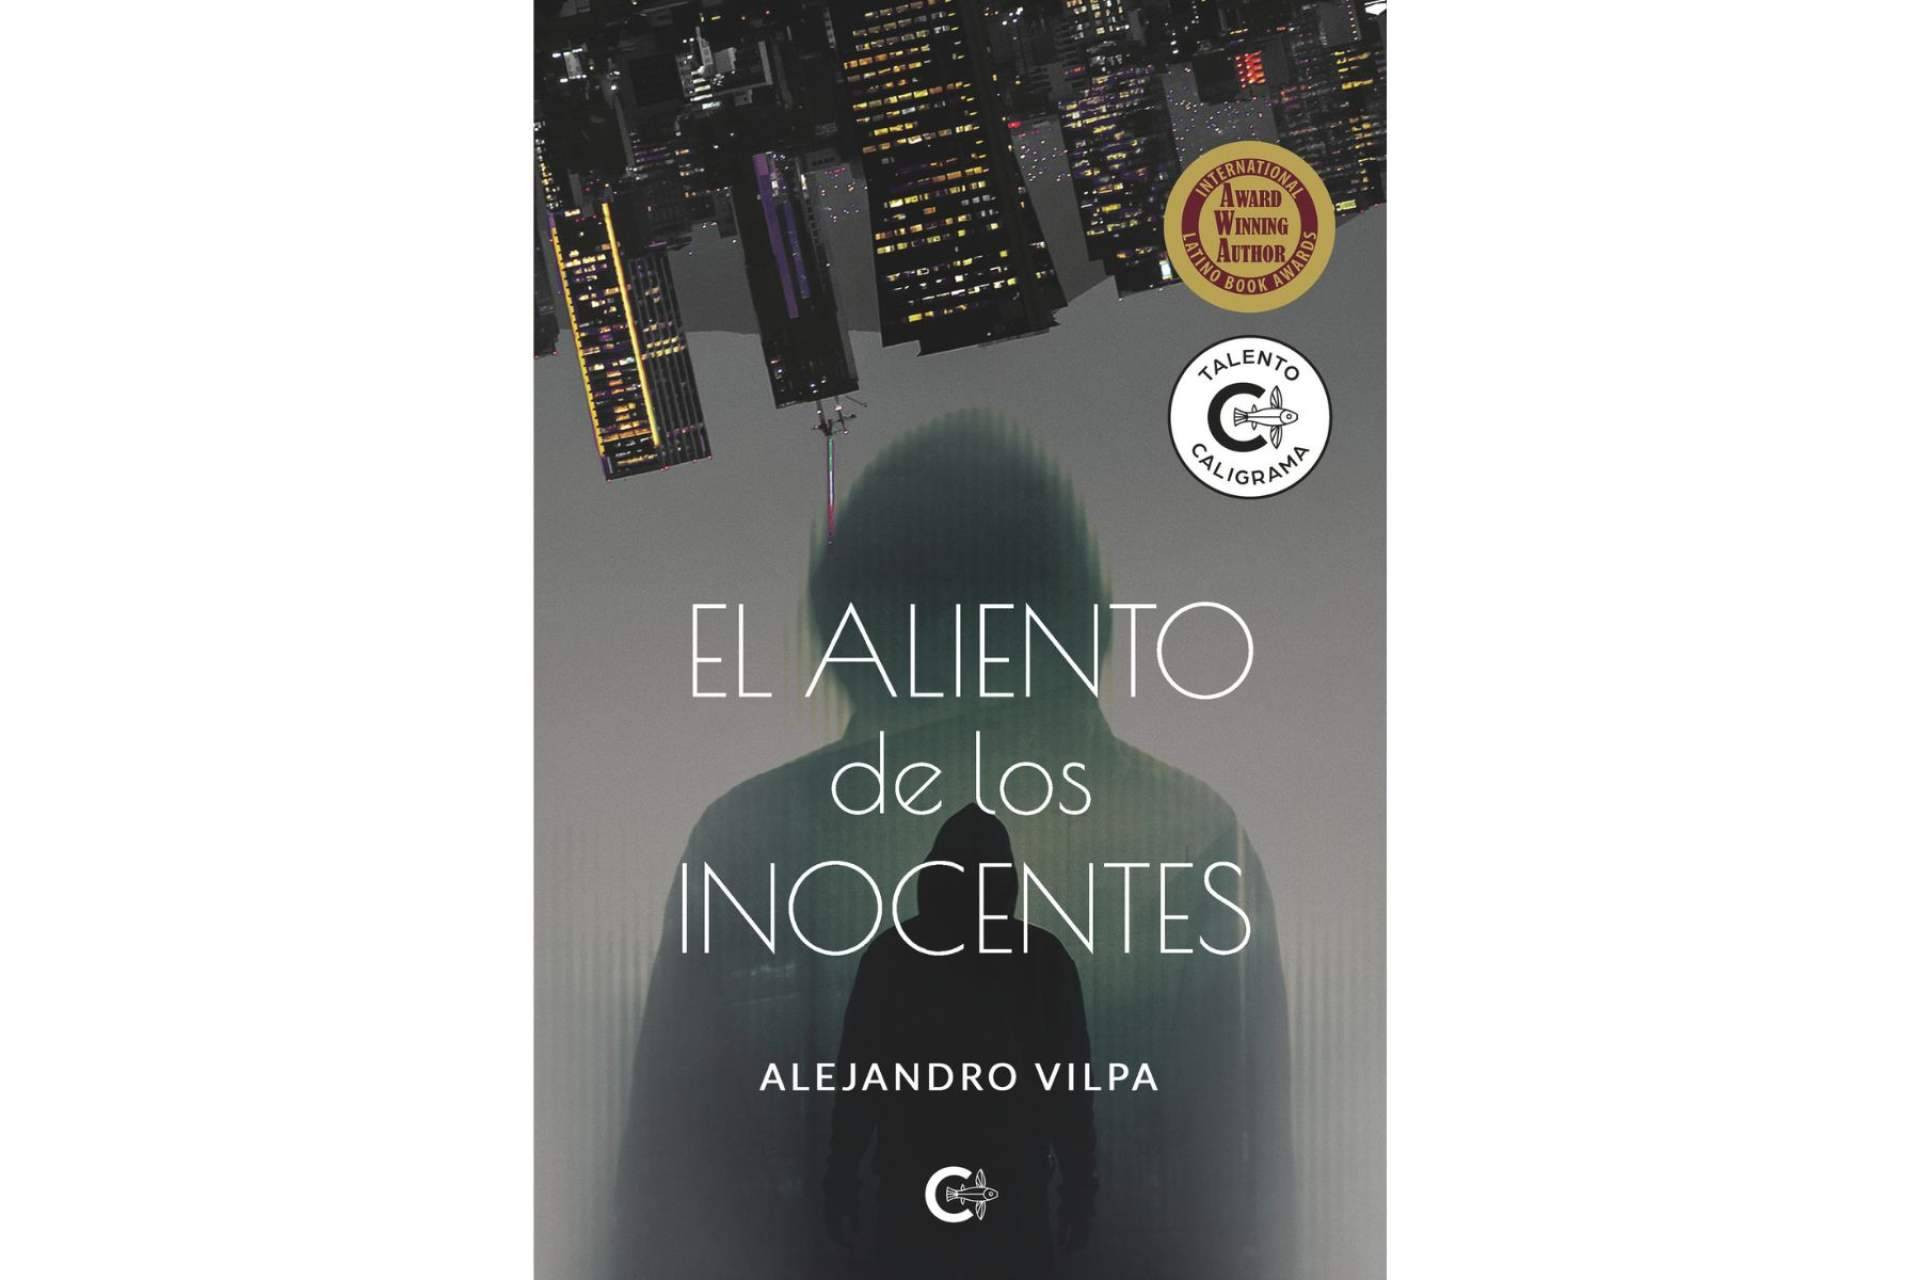  'El aliento de los inocentes' de Alejandro Vilpa obtiene la Medalla de Oro y se prepara para su publicación en Francia 